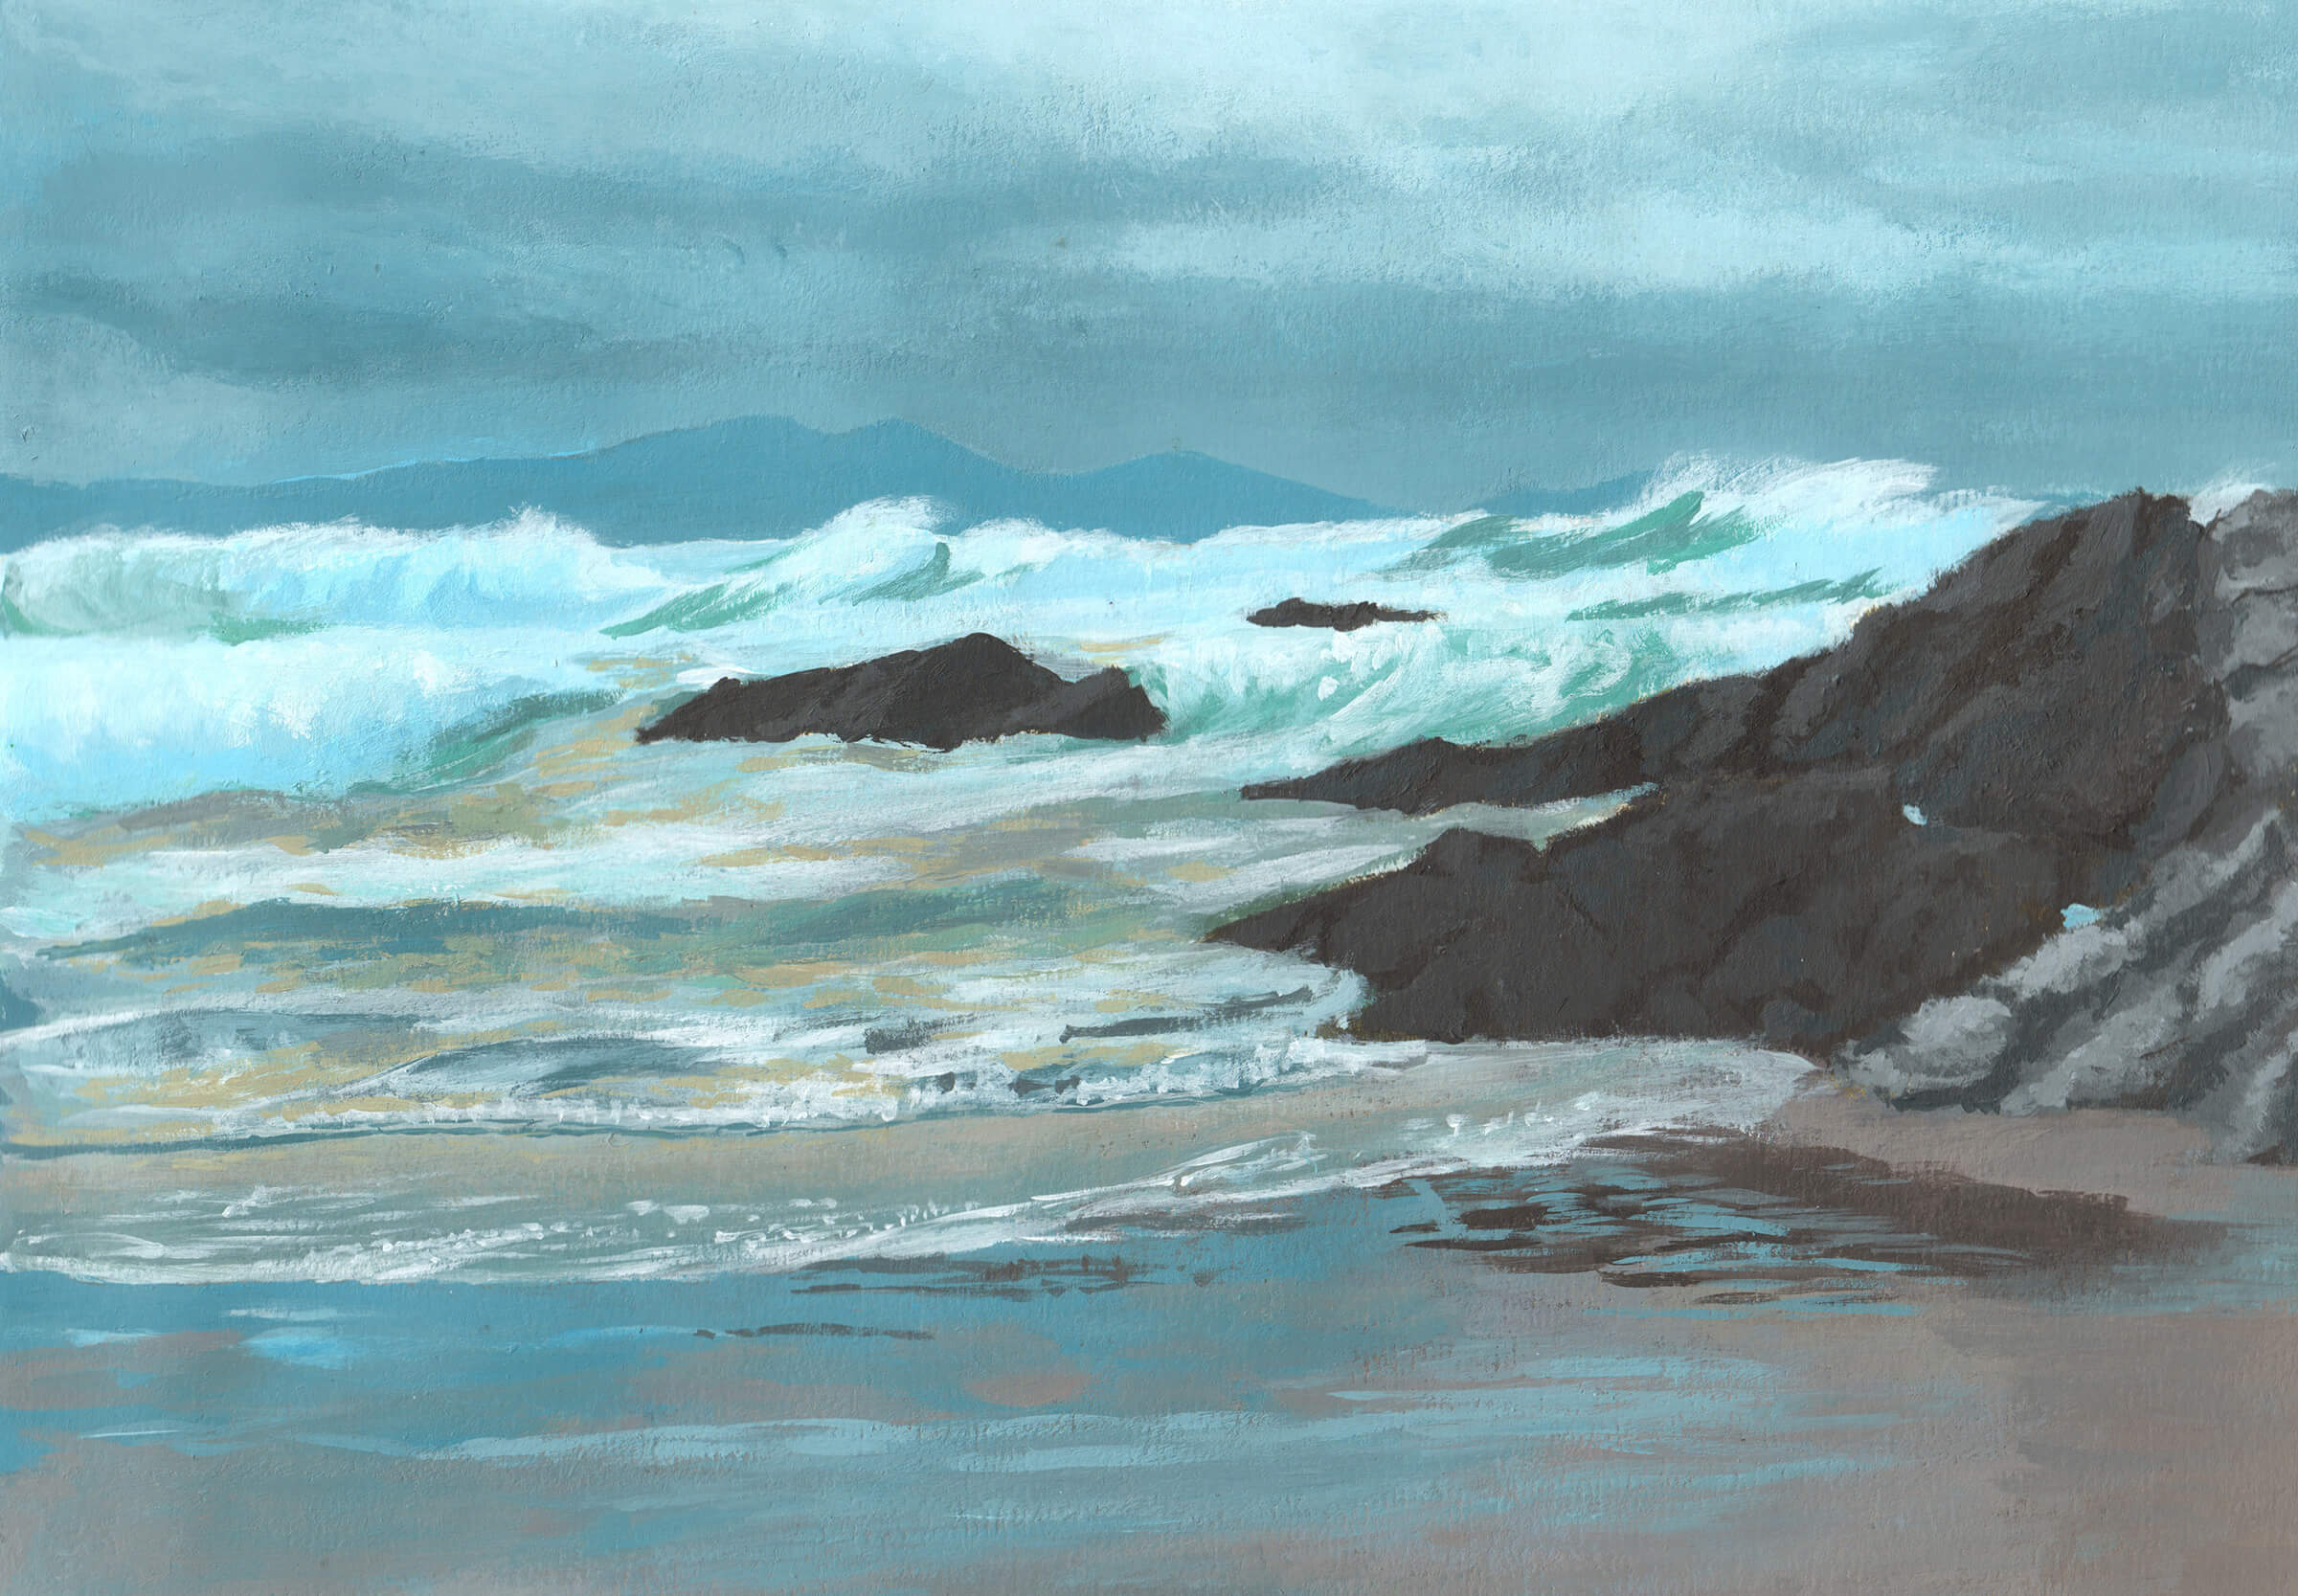 Paisaje de una orilla del océano con olas blancas entrecortadas rompiendo contra rocas de color gris oscuro sobre un cielo nublado oscuro.